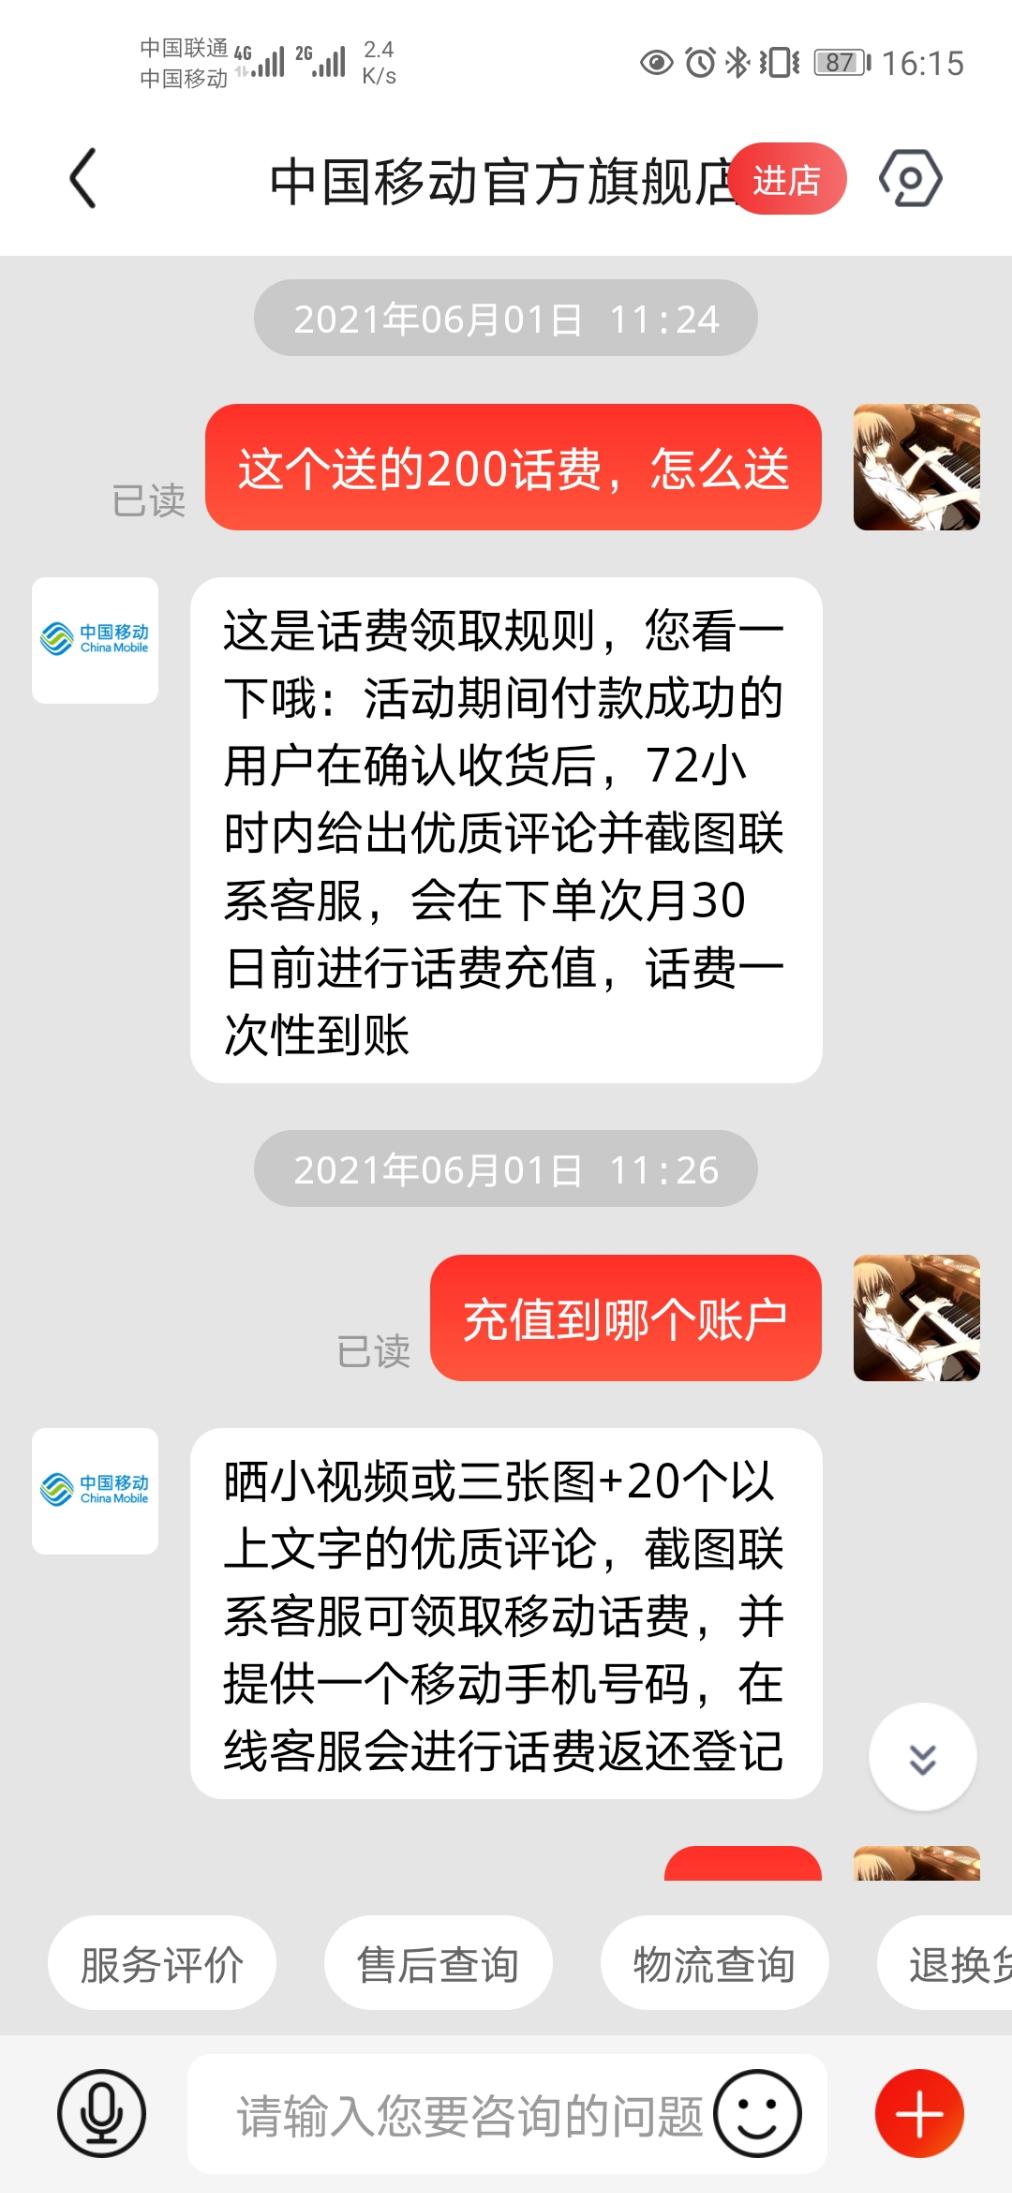 618京东买的中国移动旗舰店iqoo5活力版-晒图200话费到了--惠小助(52huixz.com)